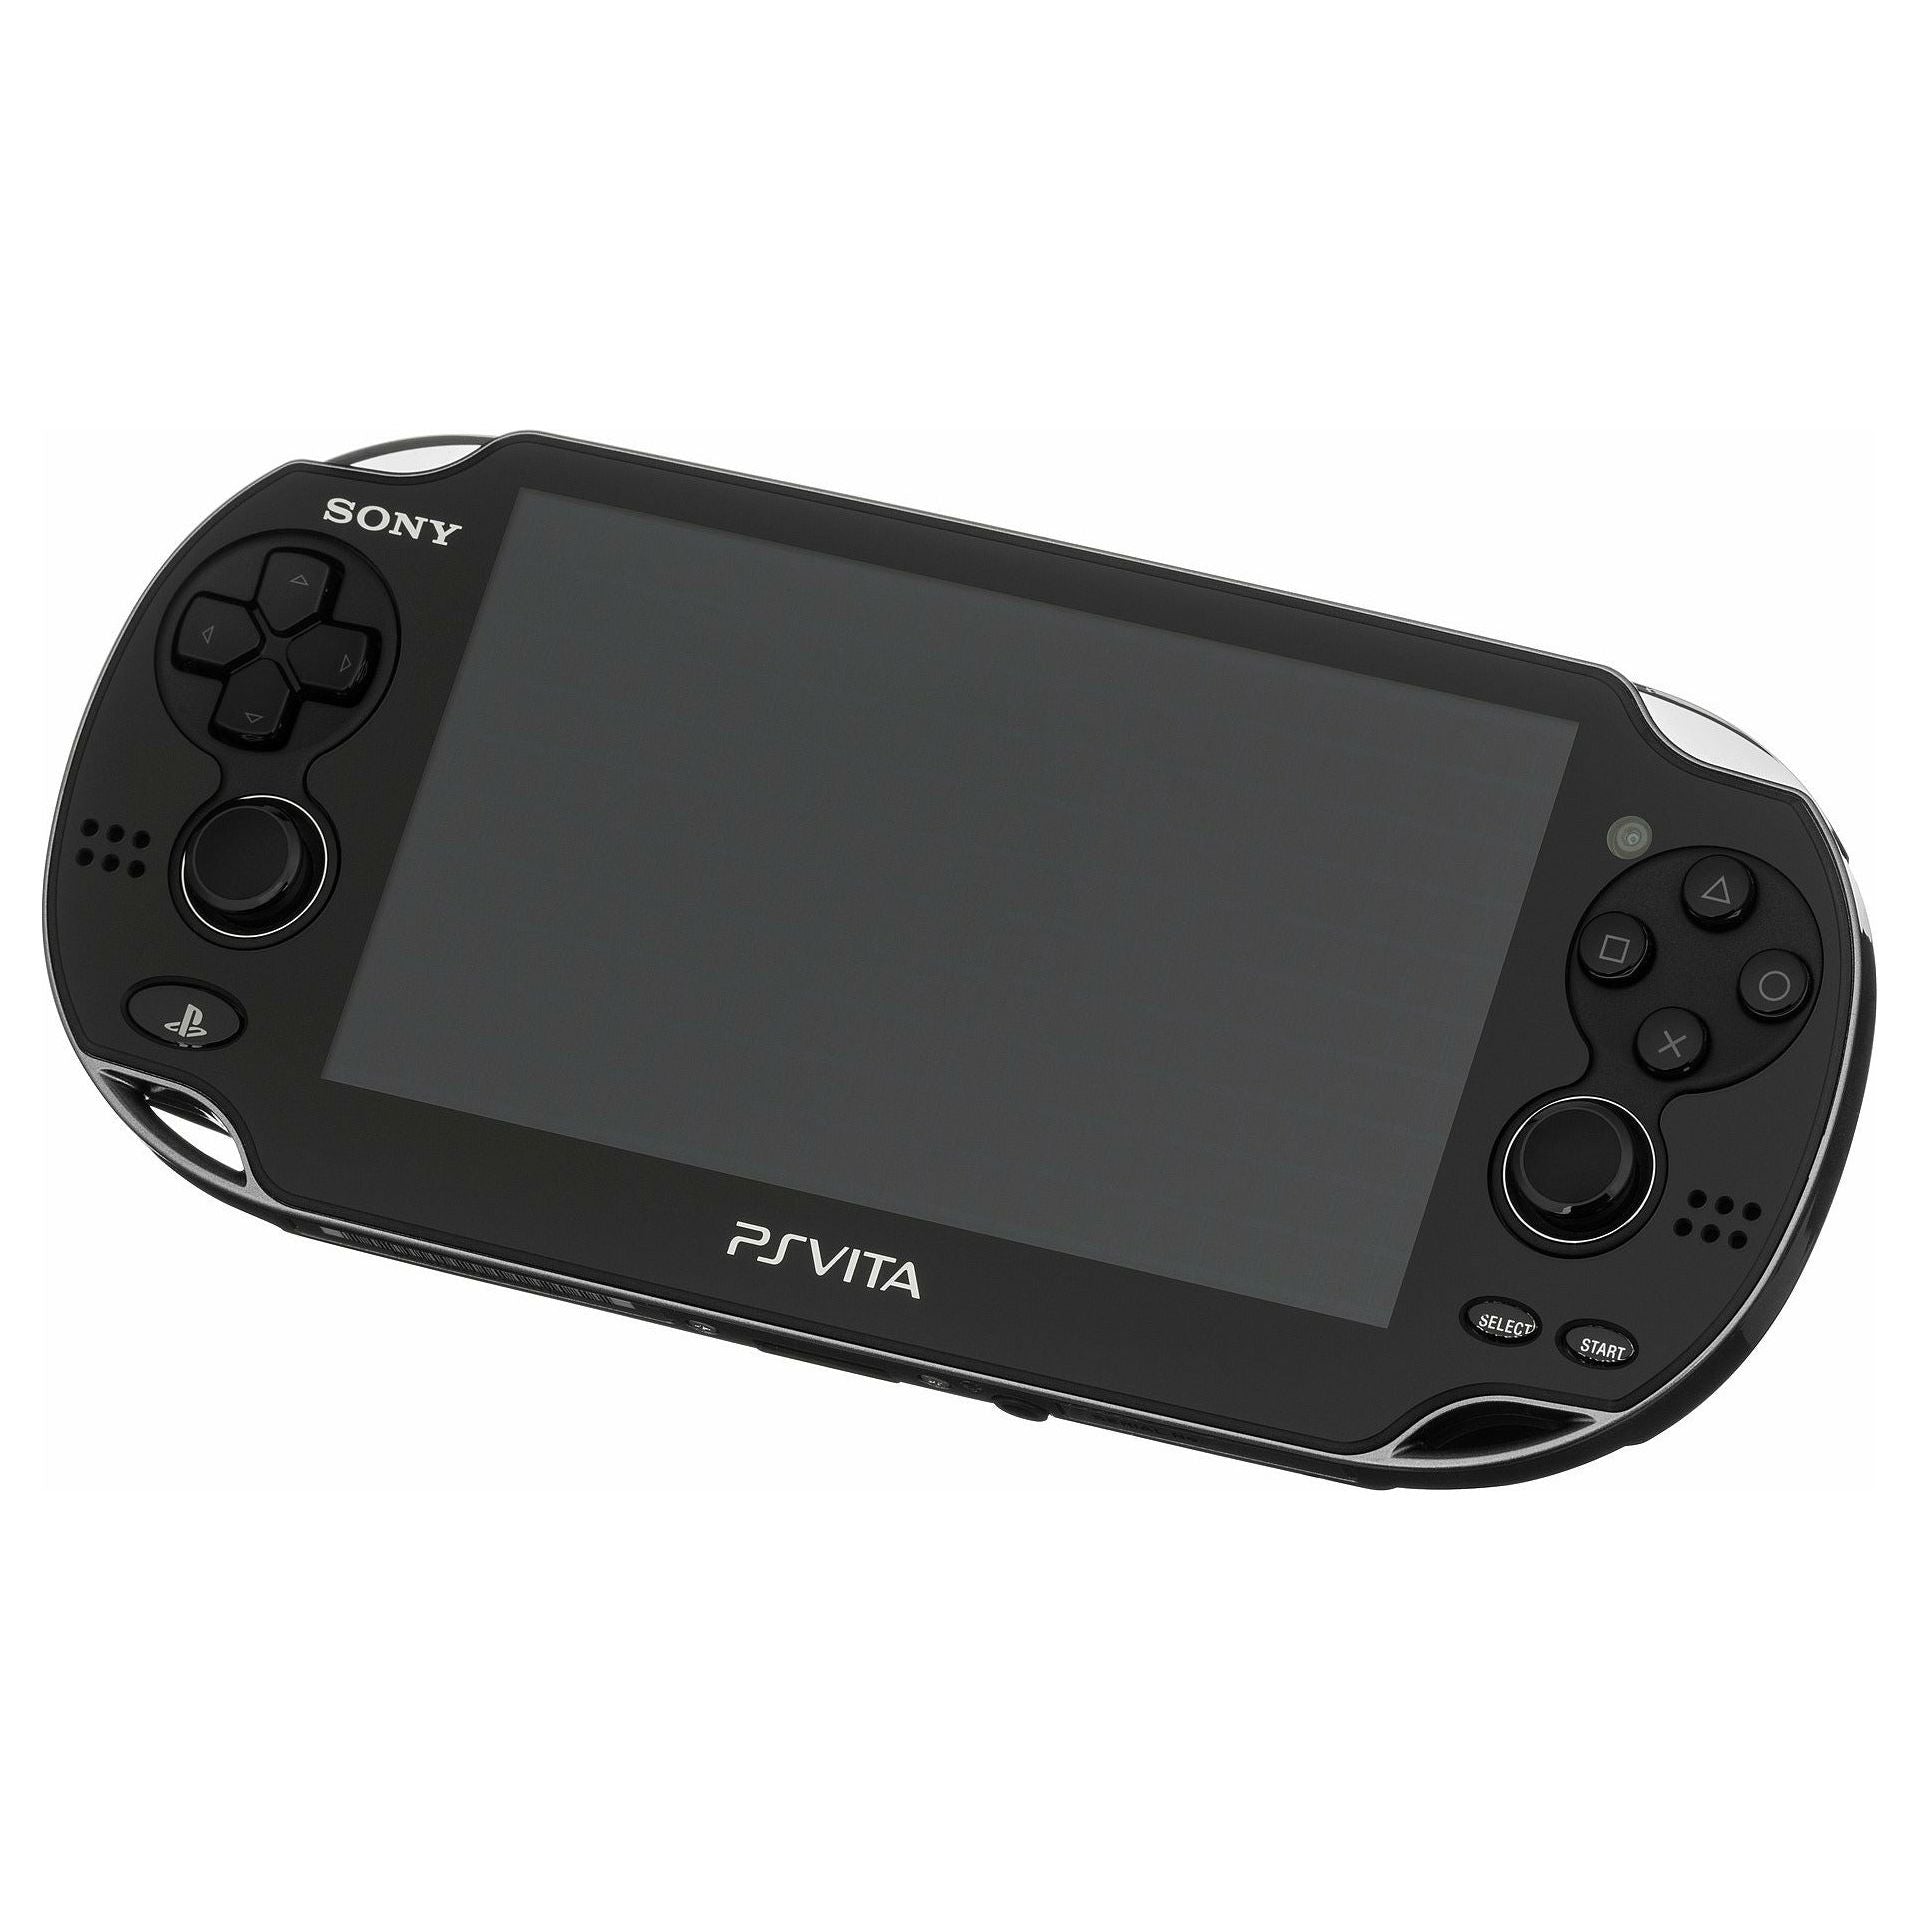 PS Vita System - Model 1001 (Black)